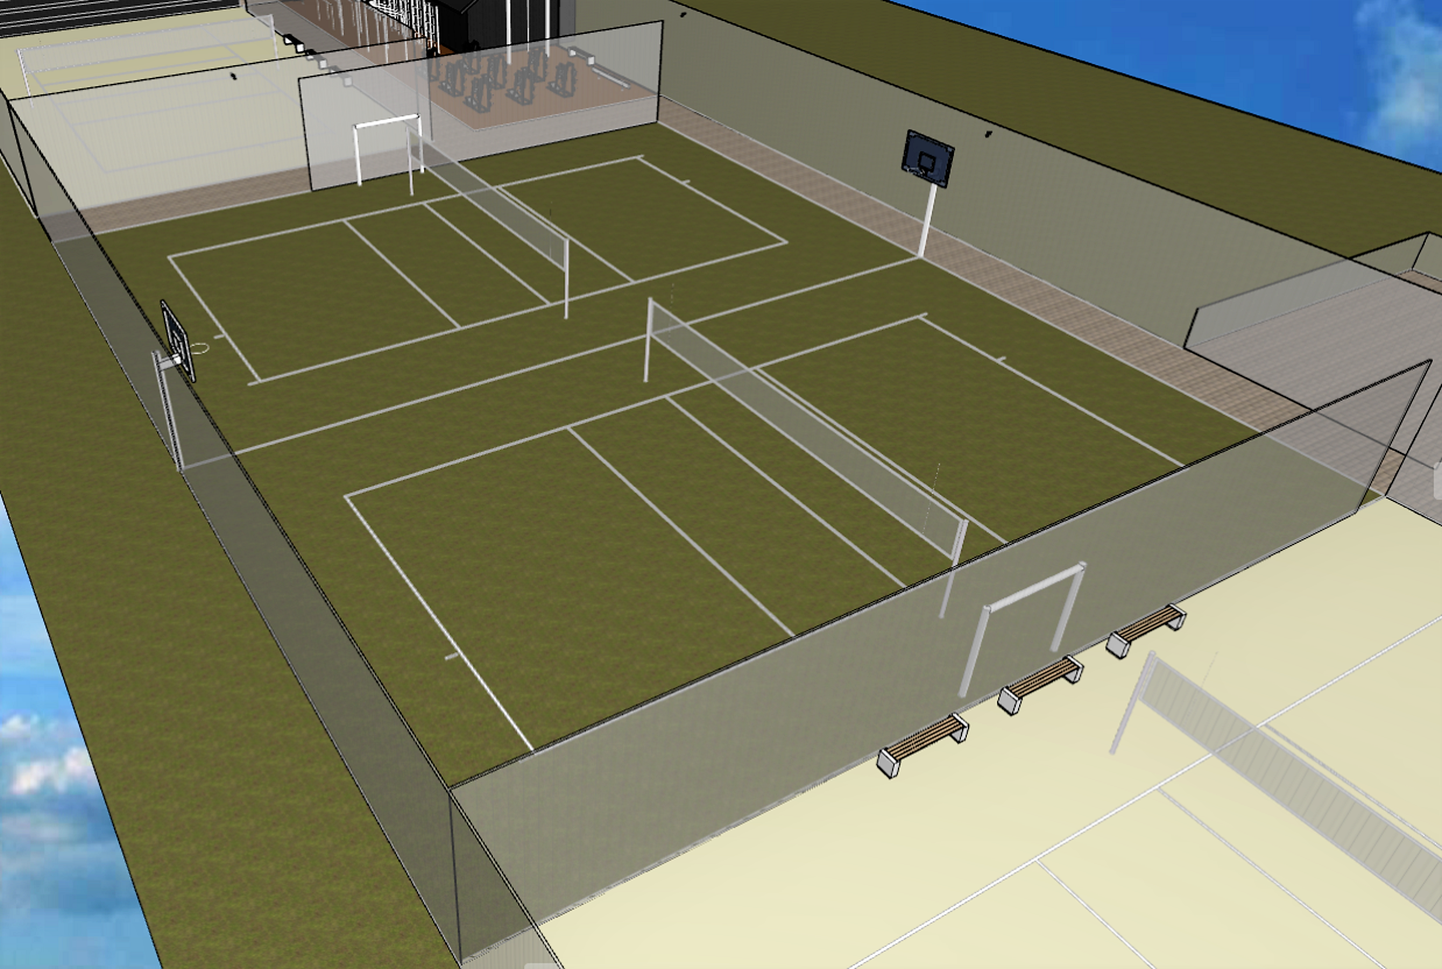 Tööde käigus ehitatakse Võru võrkpalliväljakute vahele ka uued piirdeaiad ja jalgteed.